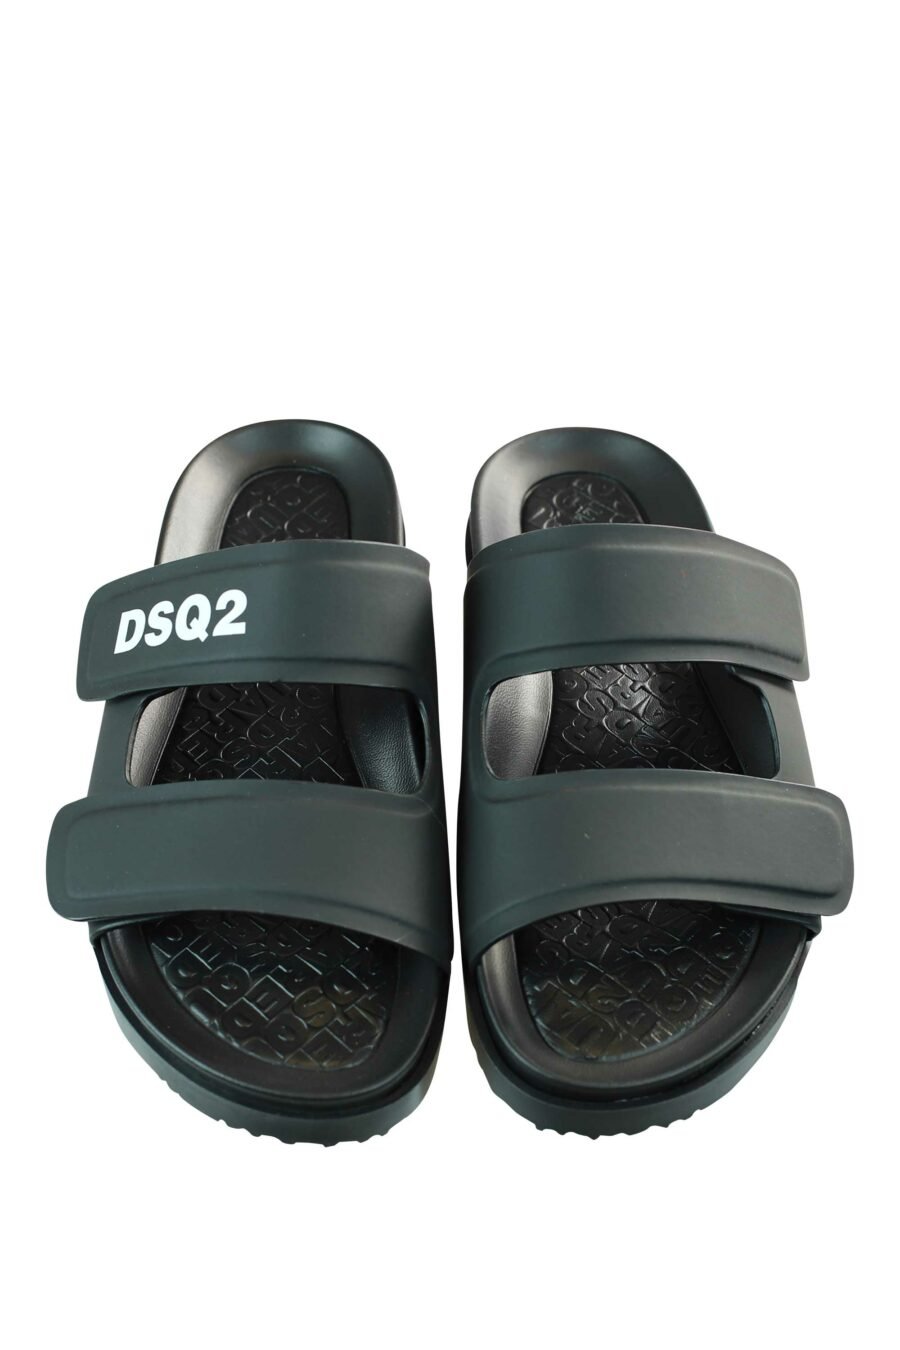 Schwarze Sandalen mit weißem "dsq2" Logo und Klettverschluss - 8055777203200 4